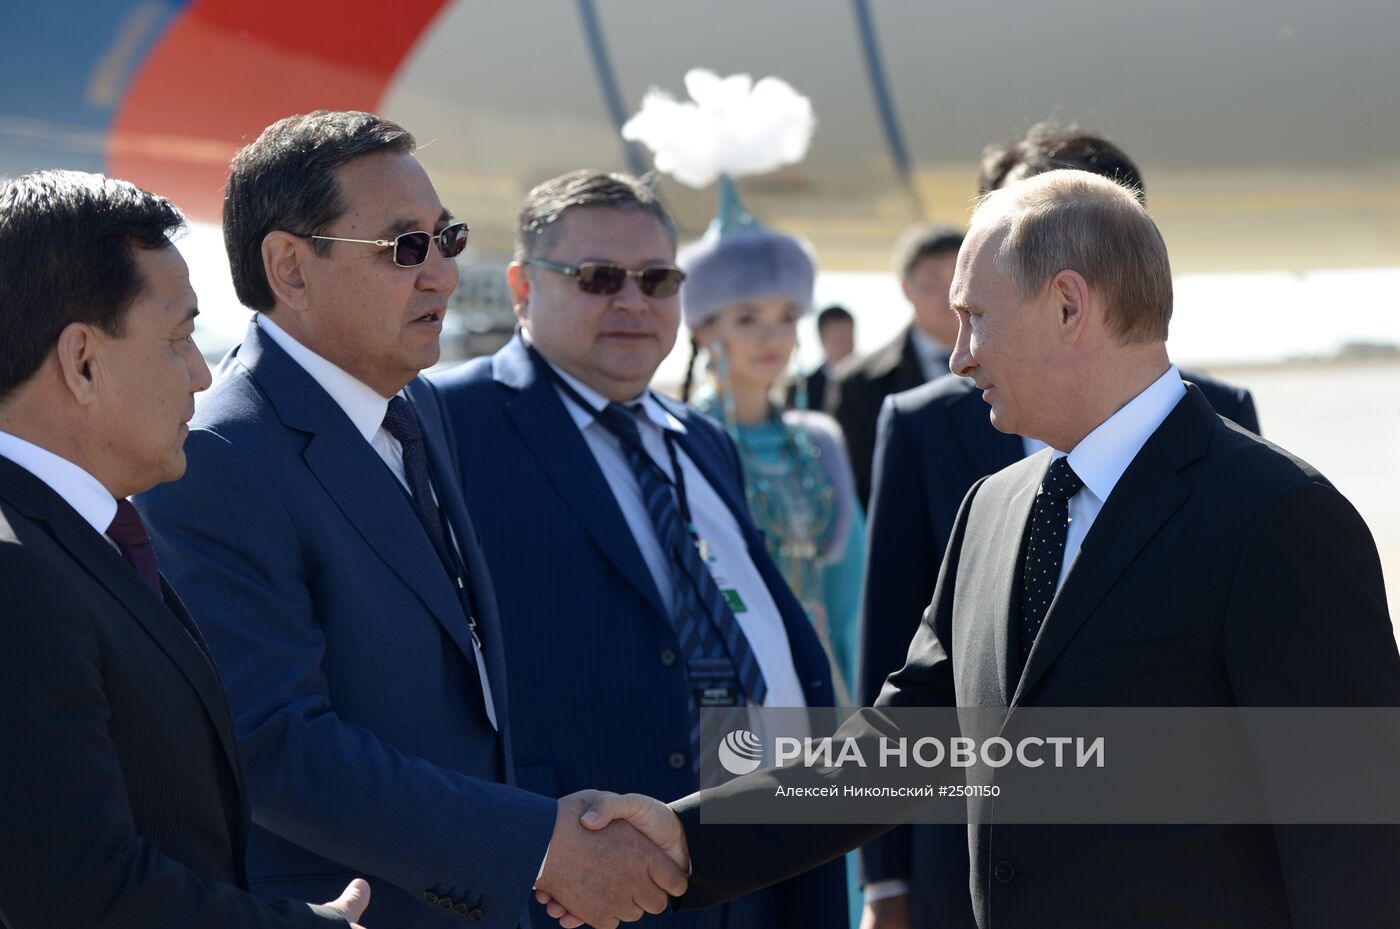 В.Путин прибыл в Казахстан для участия в форуме межрегионального сотрудничества России и Казахстана.